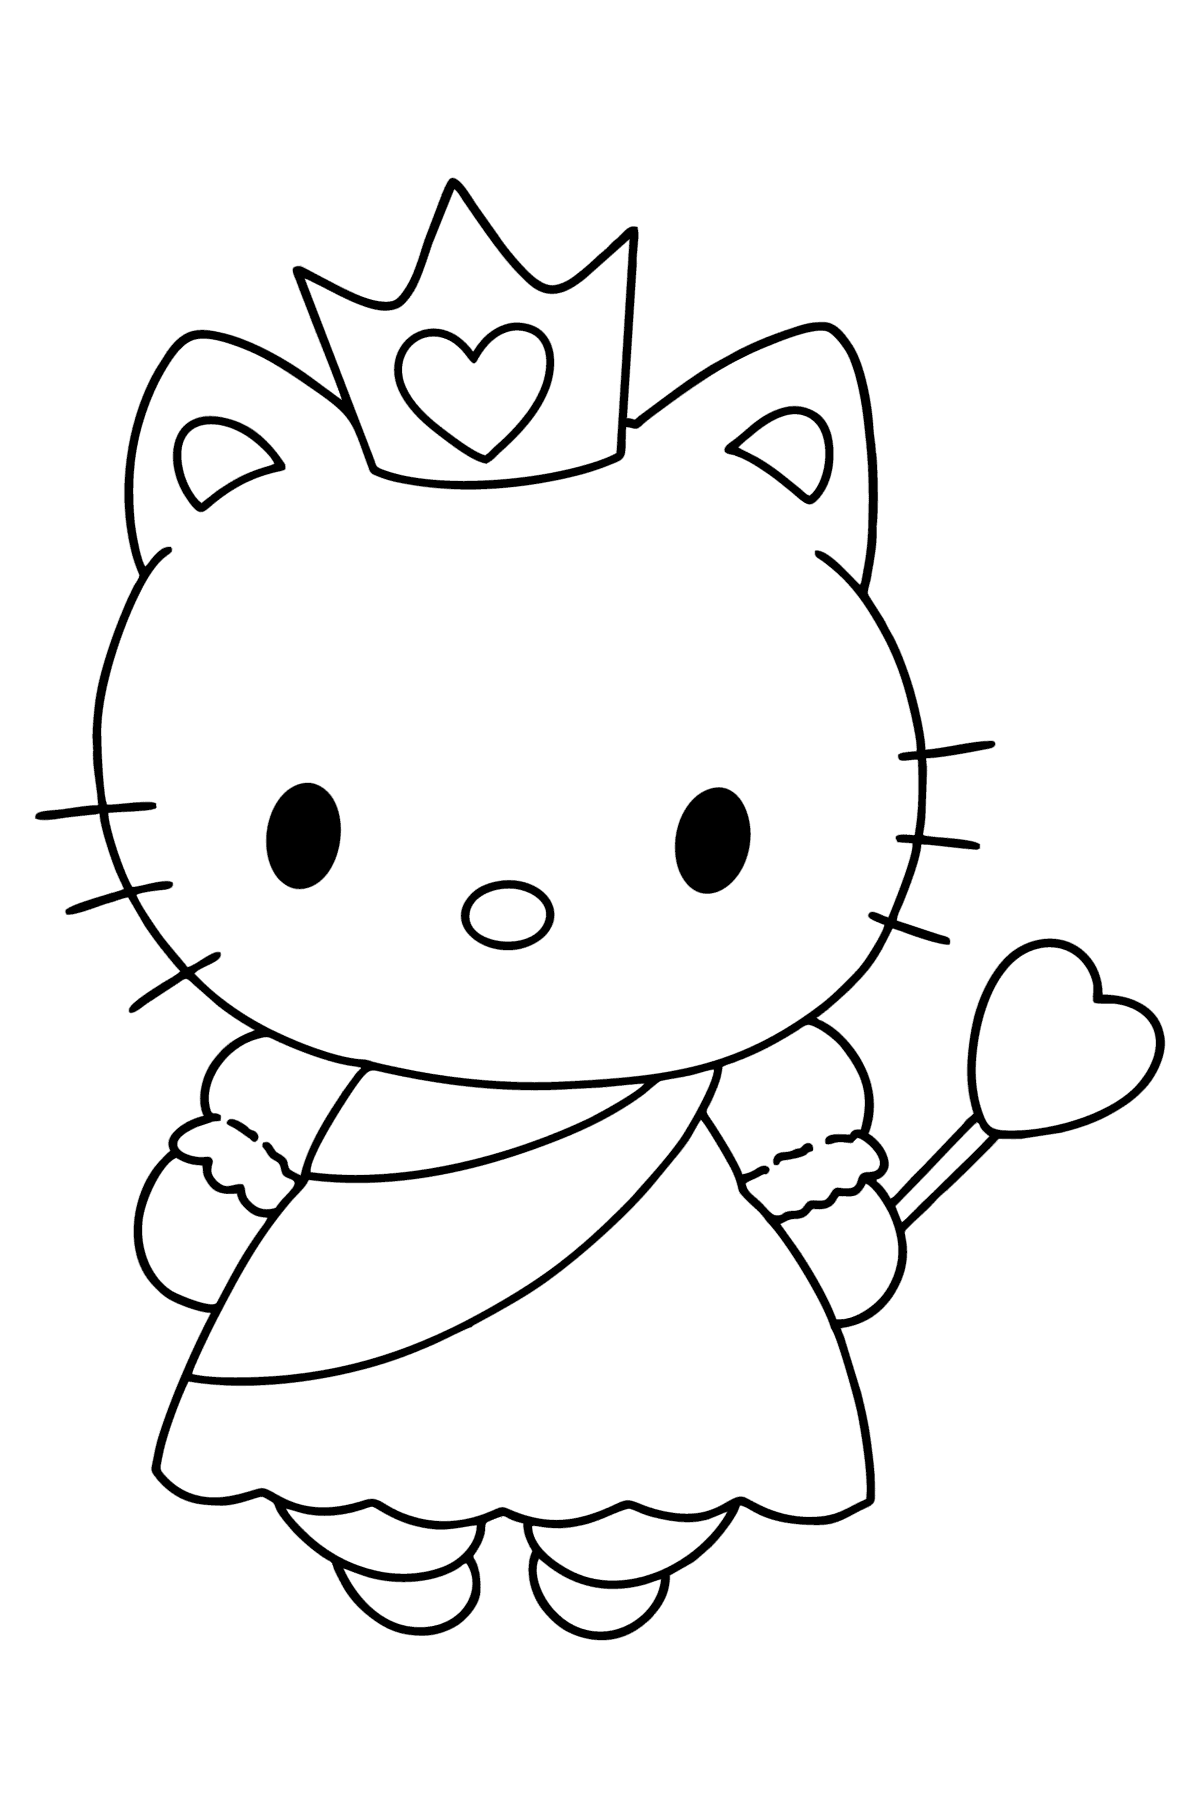 Раскраска Хелло Китти (Hello Kitty) Принцесса - Картинки для Детей